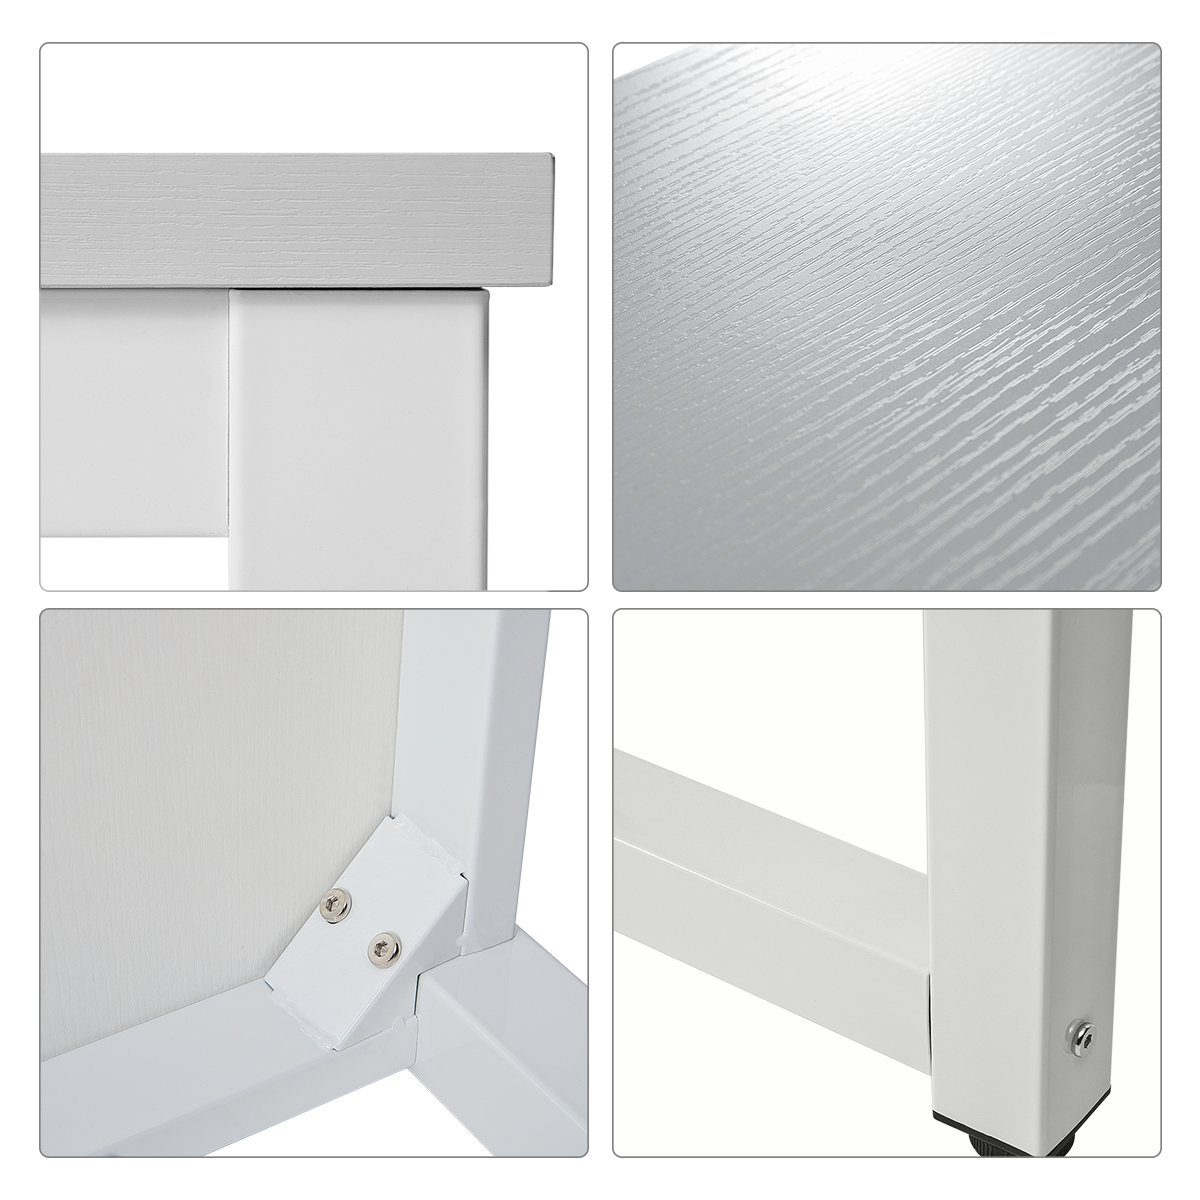 Computertisch Aufbau Weiß Stahlgestell einfacher Bürotisch Merax in verschiedenen | weiß Tisch Schreibtisch Arbeitstisch, PC Farben | weiß